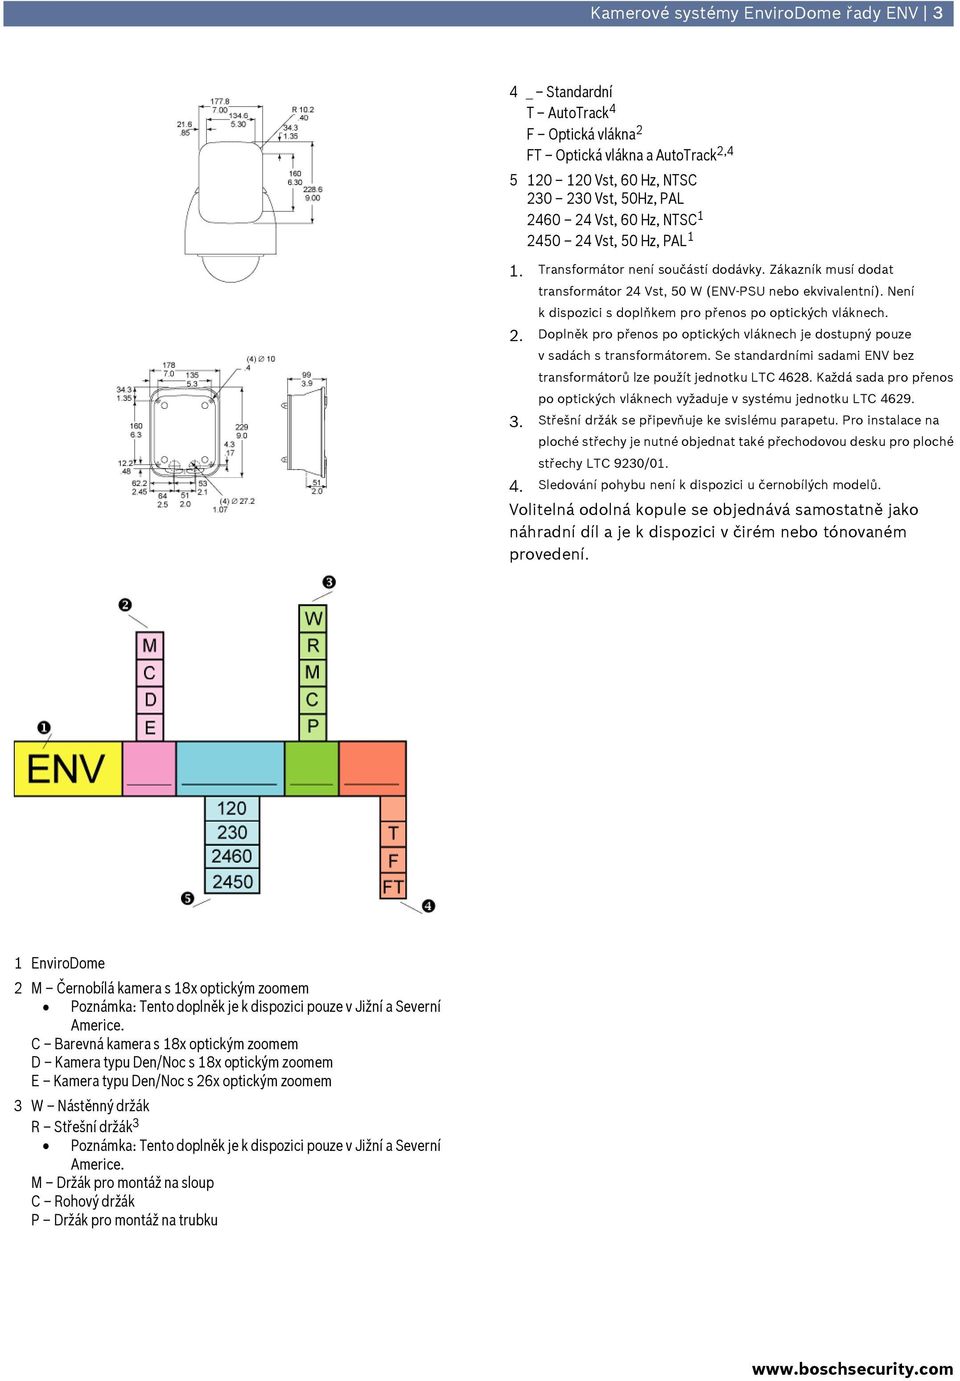 Se standardními sadami ENV bez transformátorů lze použít jednotku LTC 4628. Každá sada pro přenos po optických vláknech vyžaduje v systému jednotku LTC 4629. 3.